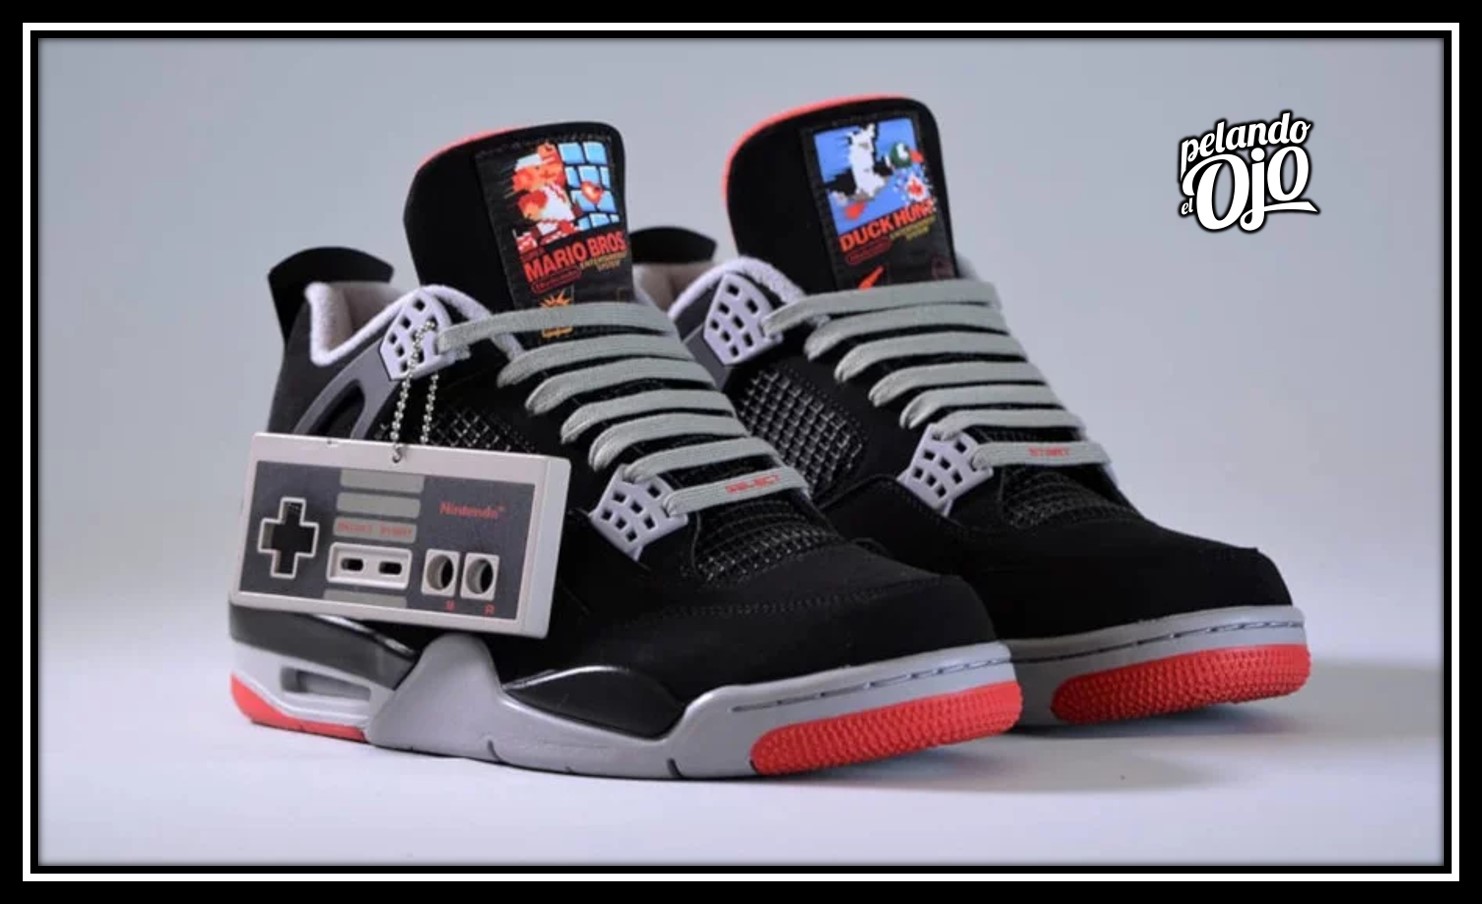 Enviar carbón psicología Nintendo y Nike presentan los tenis 'Air Jordan NES IV Retro' - Pelando el  Ojo